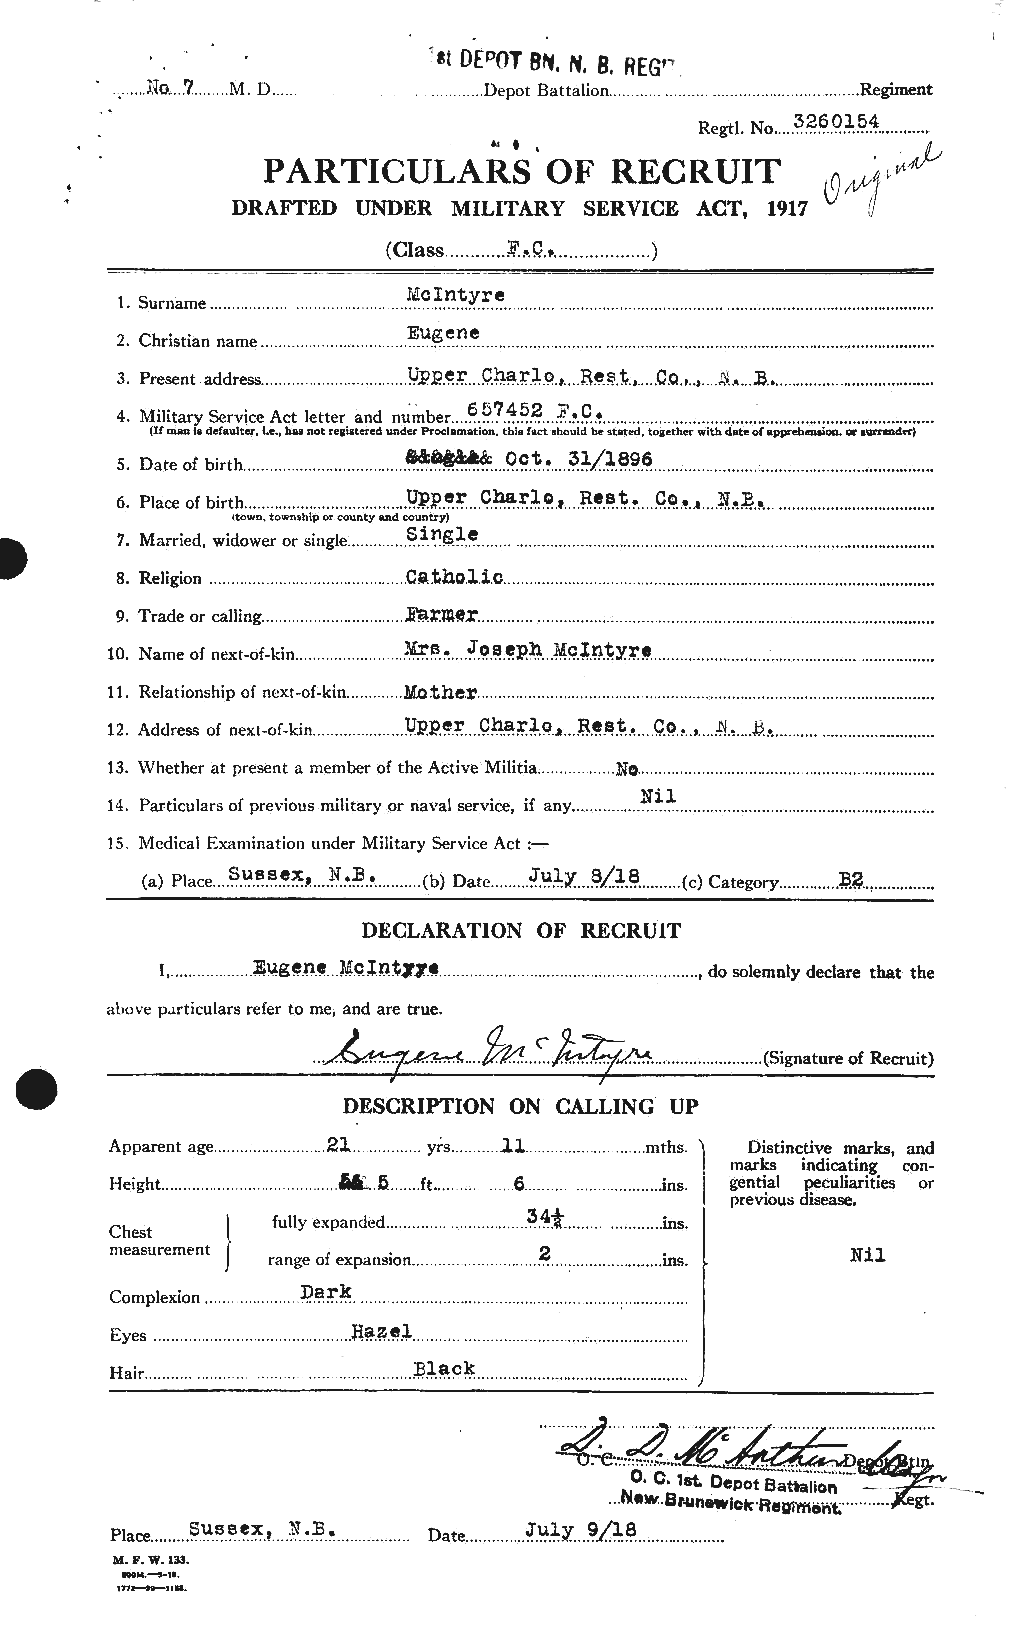 Dossiers du Personnel de la Première Guerre mondiale - CEC 527367a